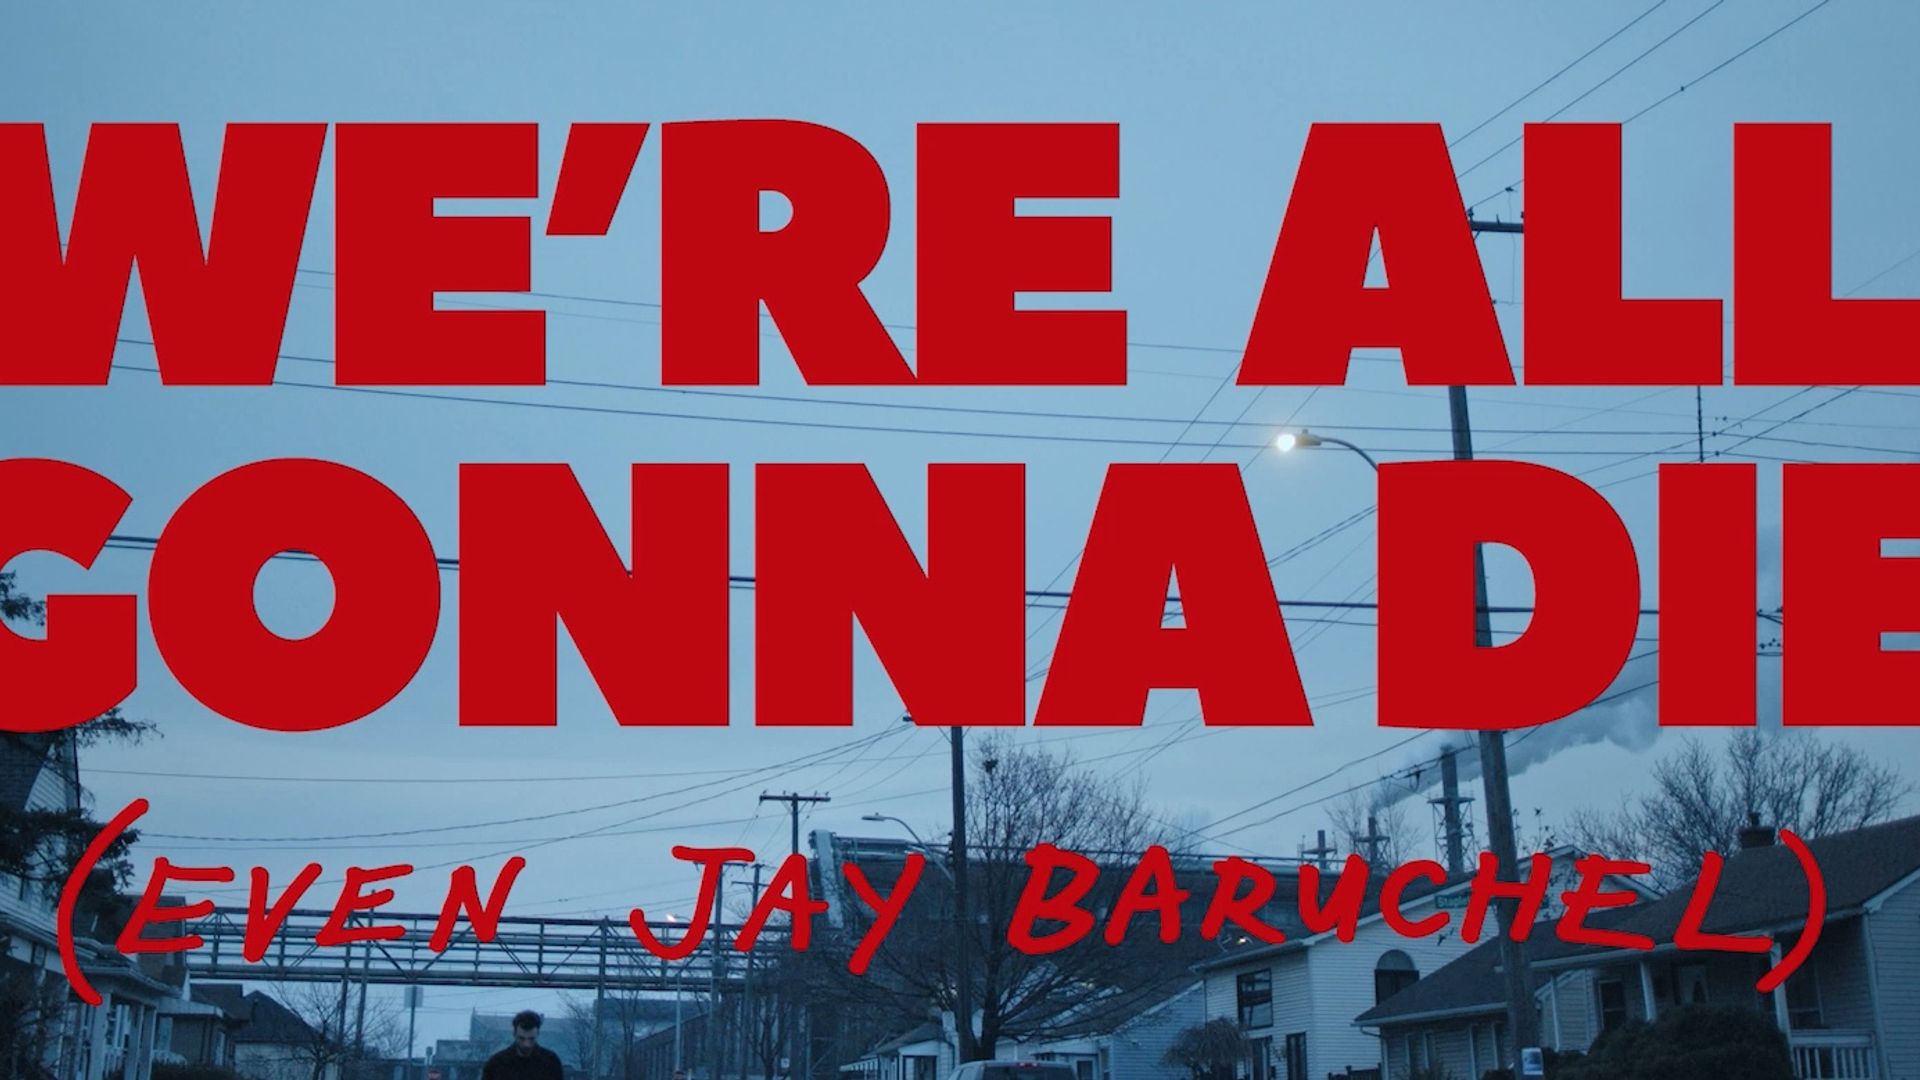 We're All Gonna Die (Even Jay Baruchel) background